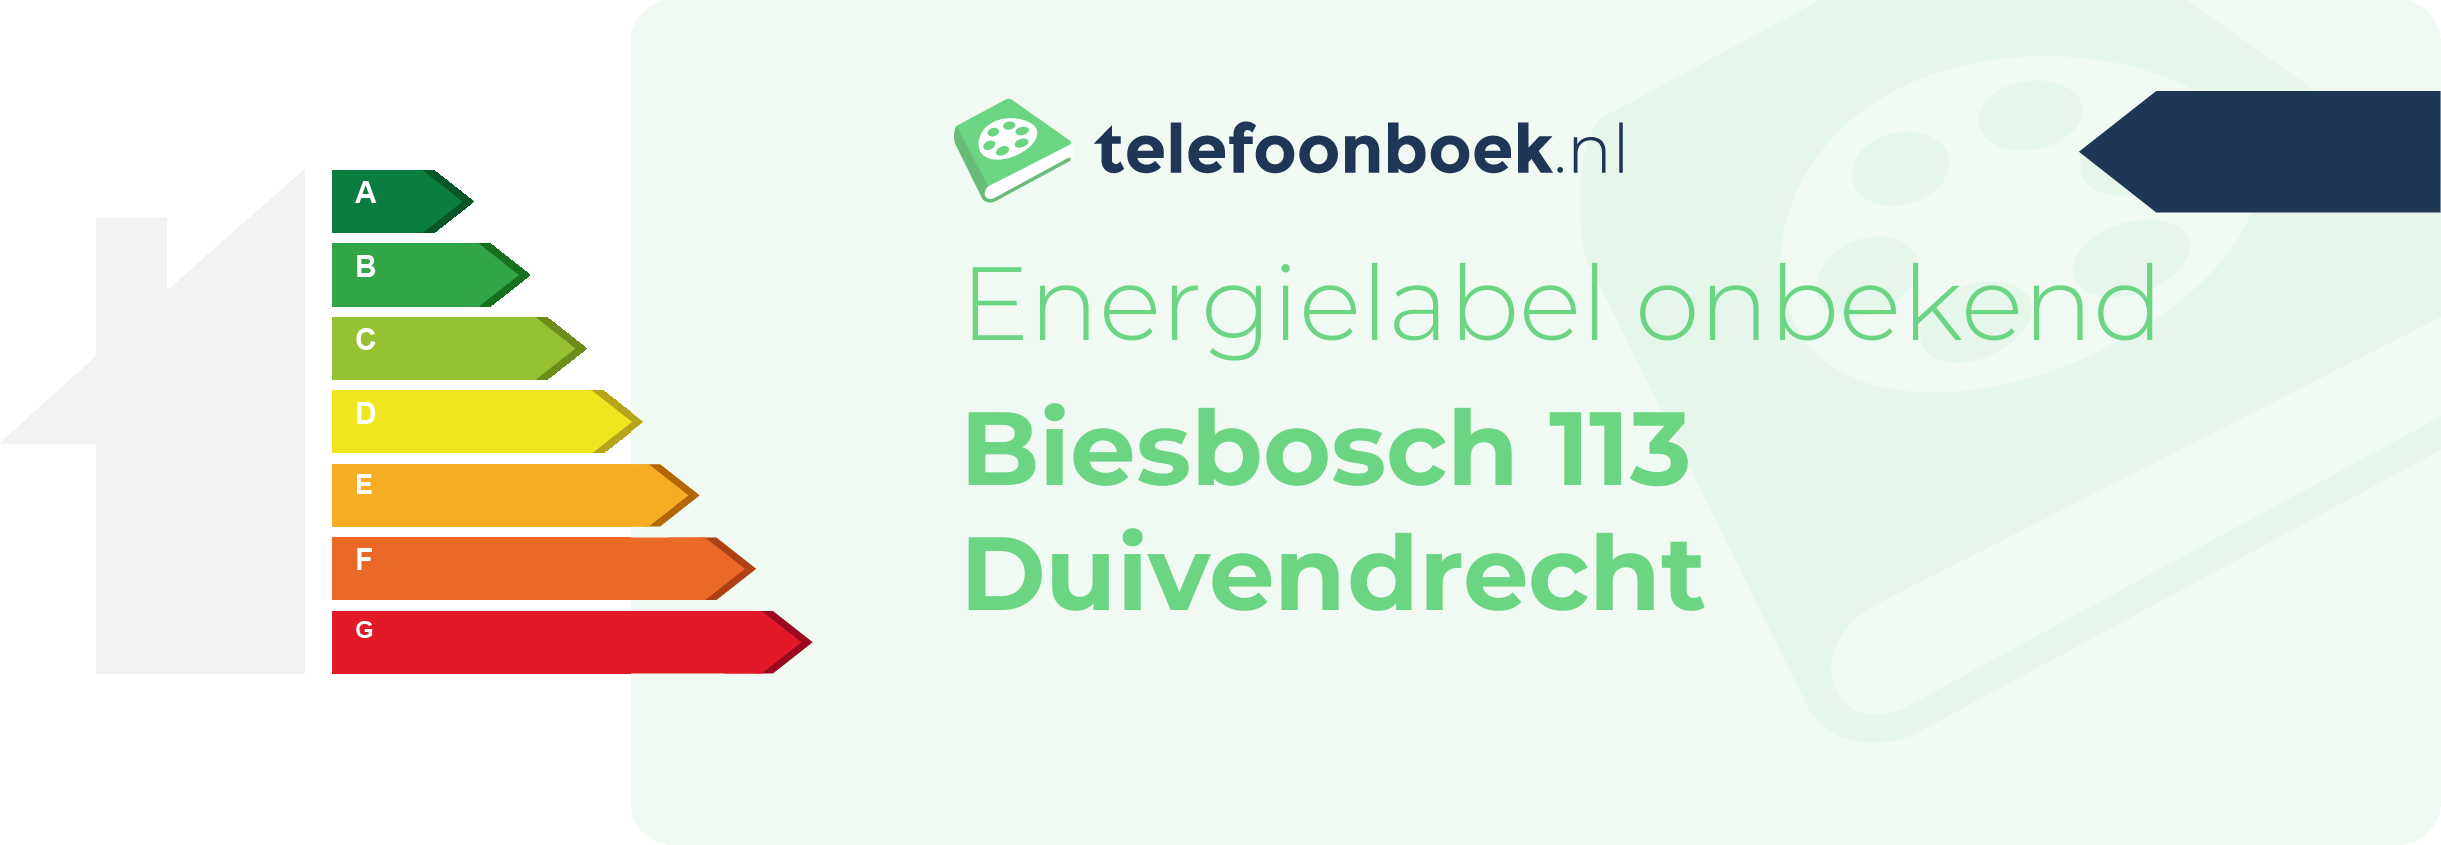 Energielabel Biesbosch 113 Duivendrecht